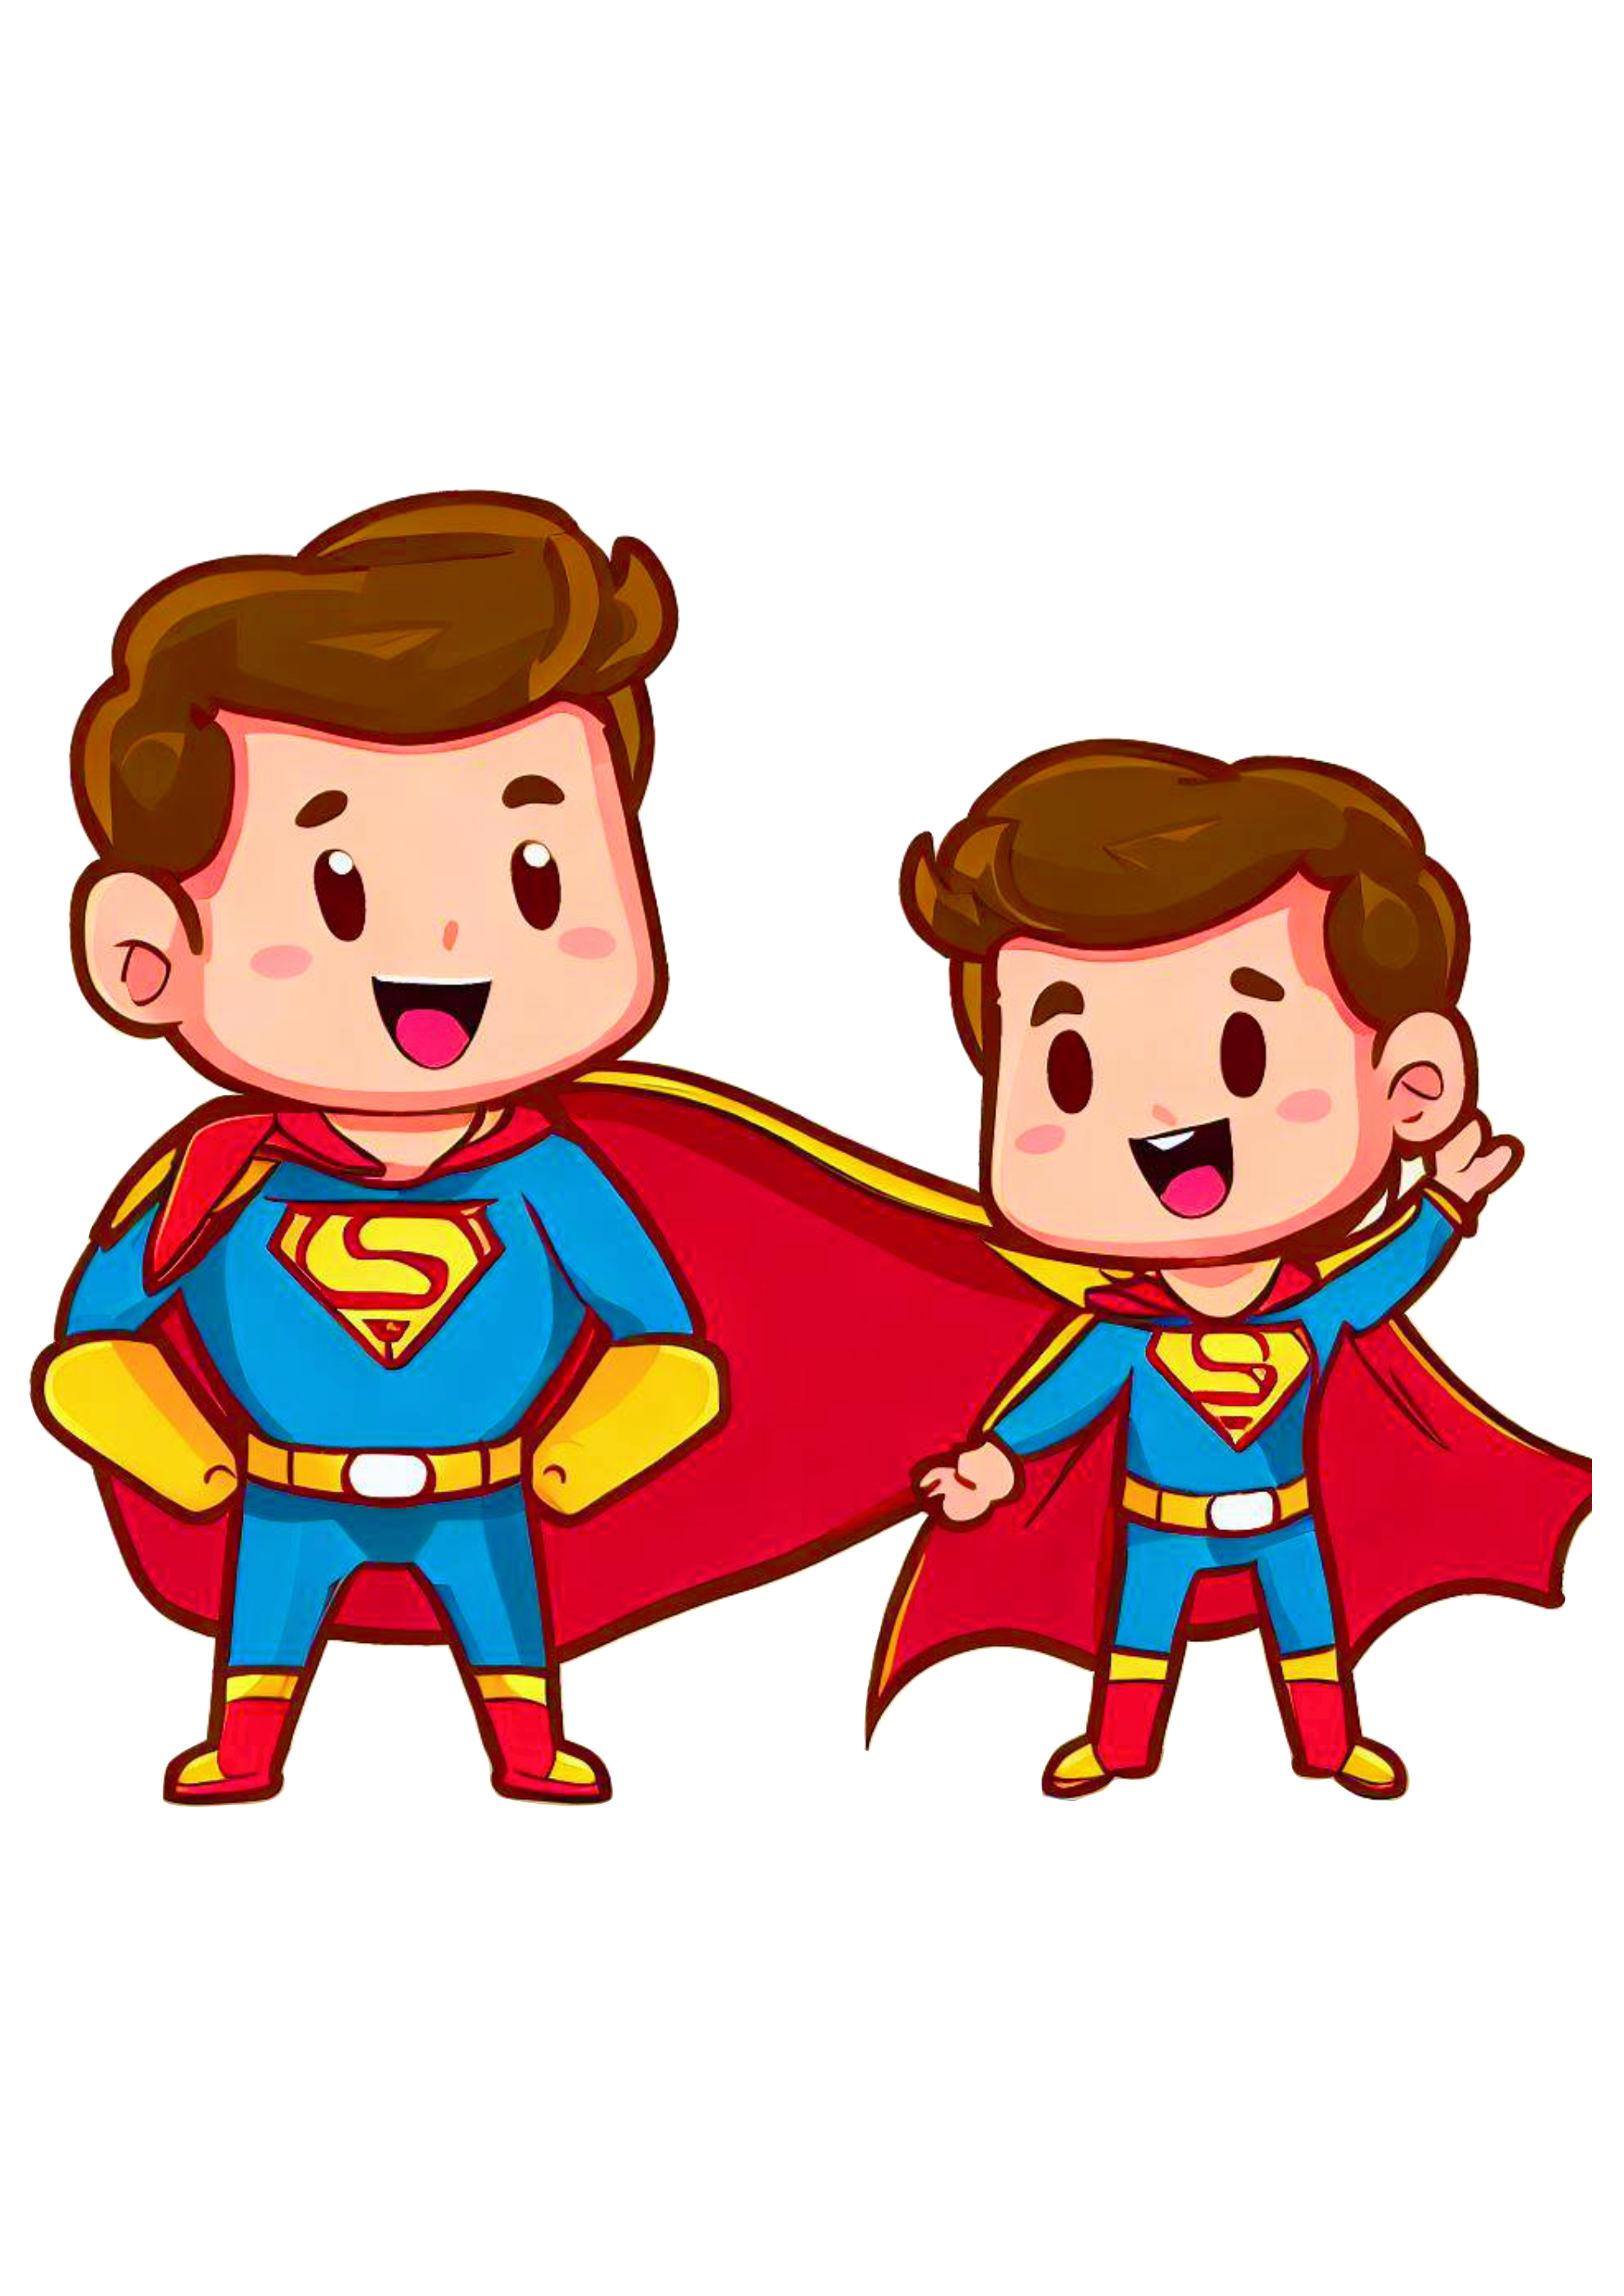 Super pai e super filho desenho animado dia dos pais download pai de menino cartoon fundo transparente png